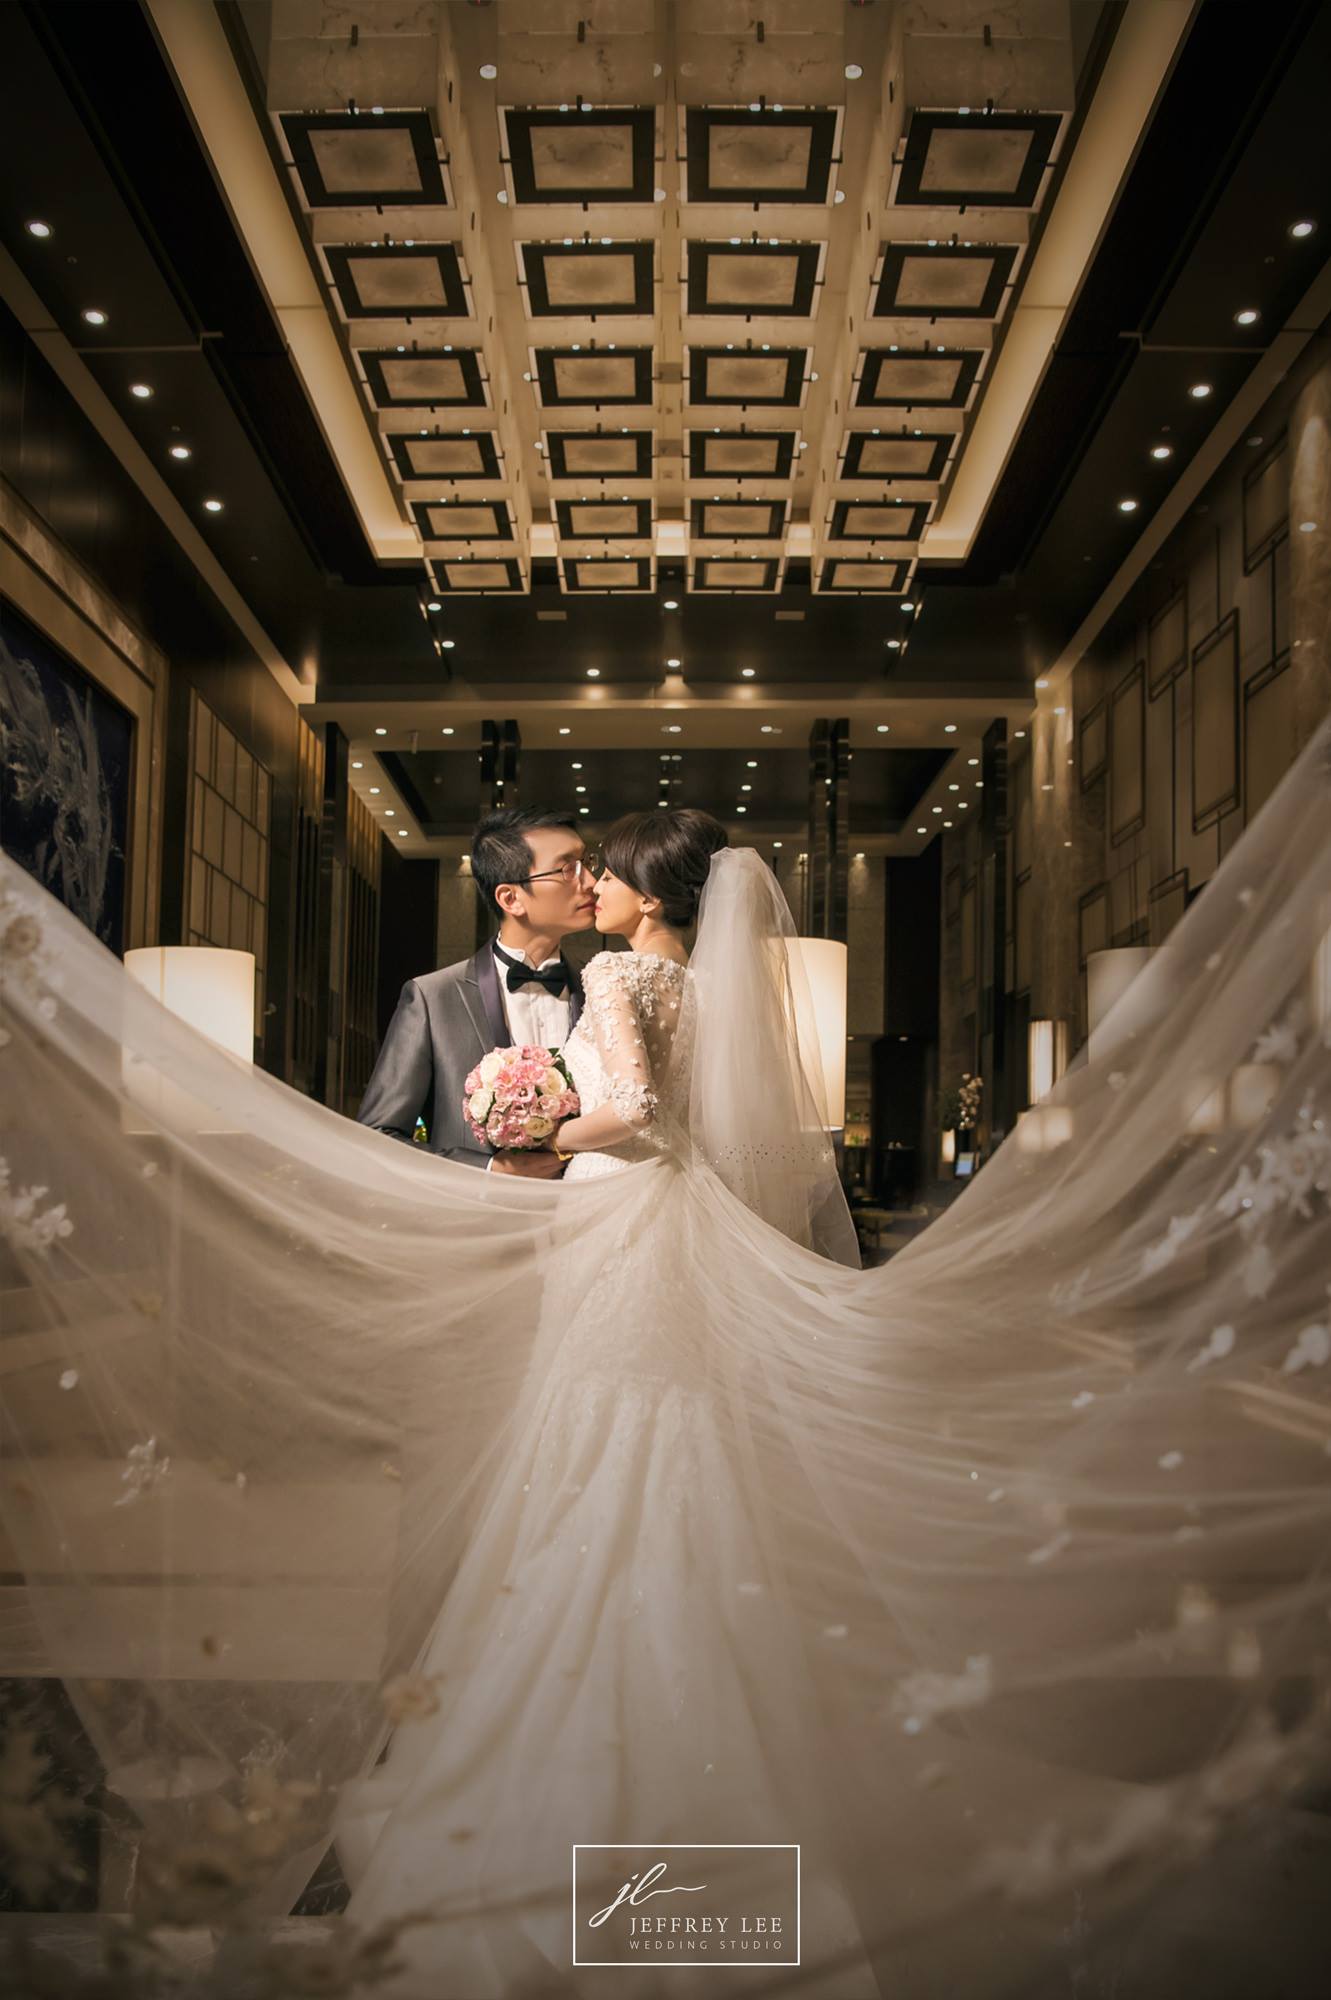 台北婚攝,婚攝,婚禮攝影,類婚紗,婚禮人像,結婚,喜宴,台北六福萬怡酒店